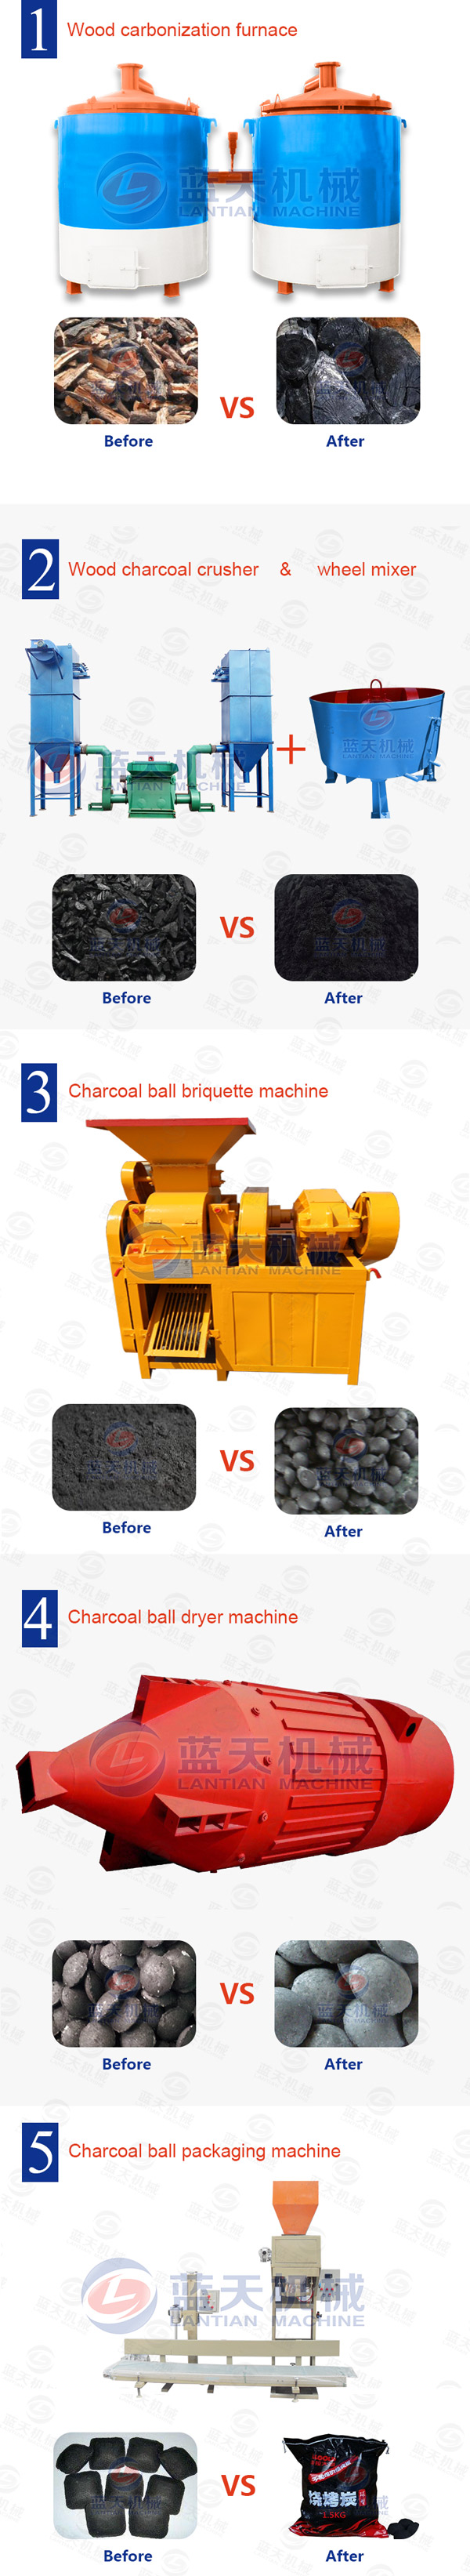 charcoal ball briquettes equipment